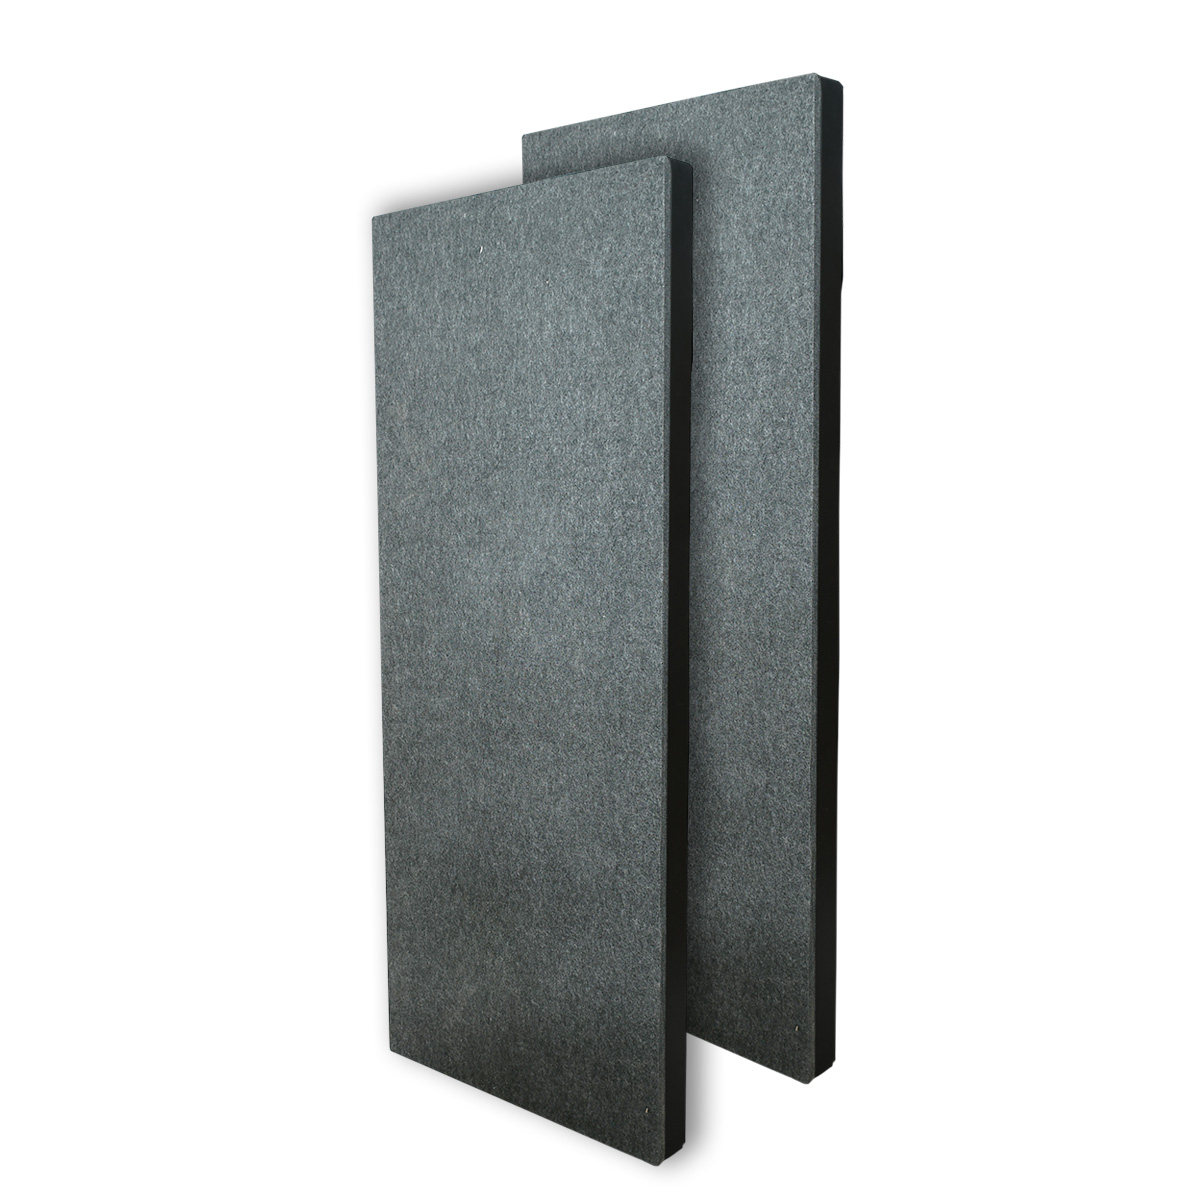 Professional acoustic panel eal4-Lxt2 espuma acústica absorbente lisa sala tv paq 2 pza 1mx60x10cm